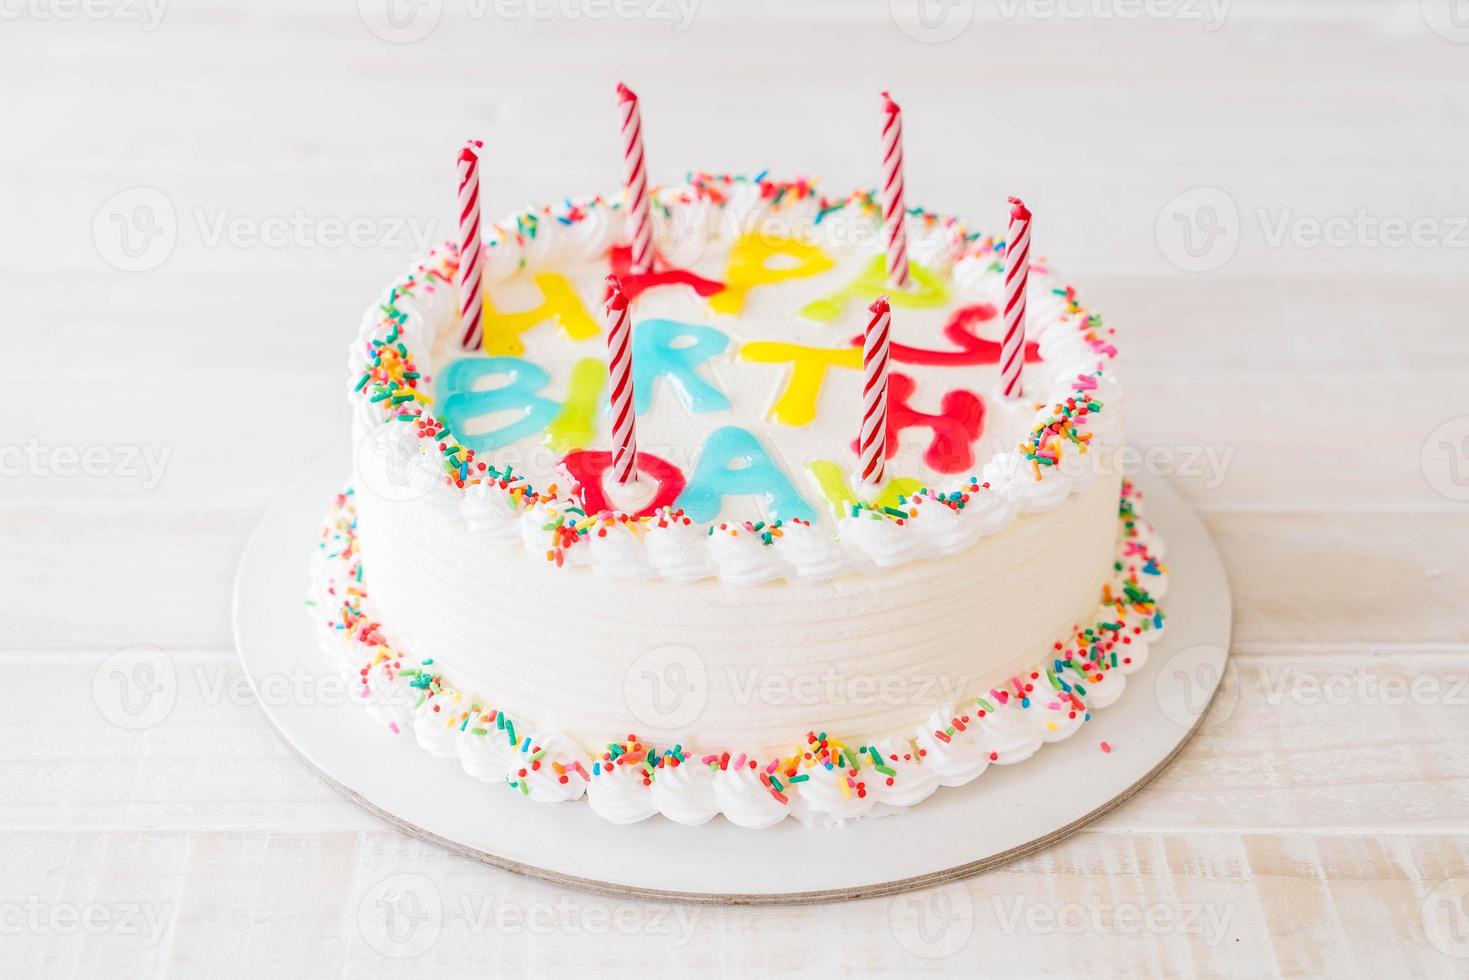 torta di buon compleanno sul tavolo foto